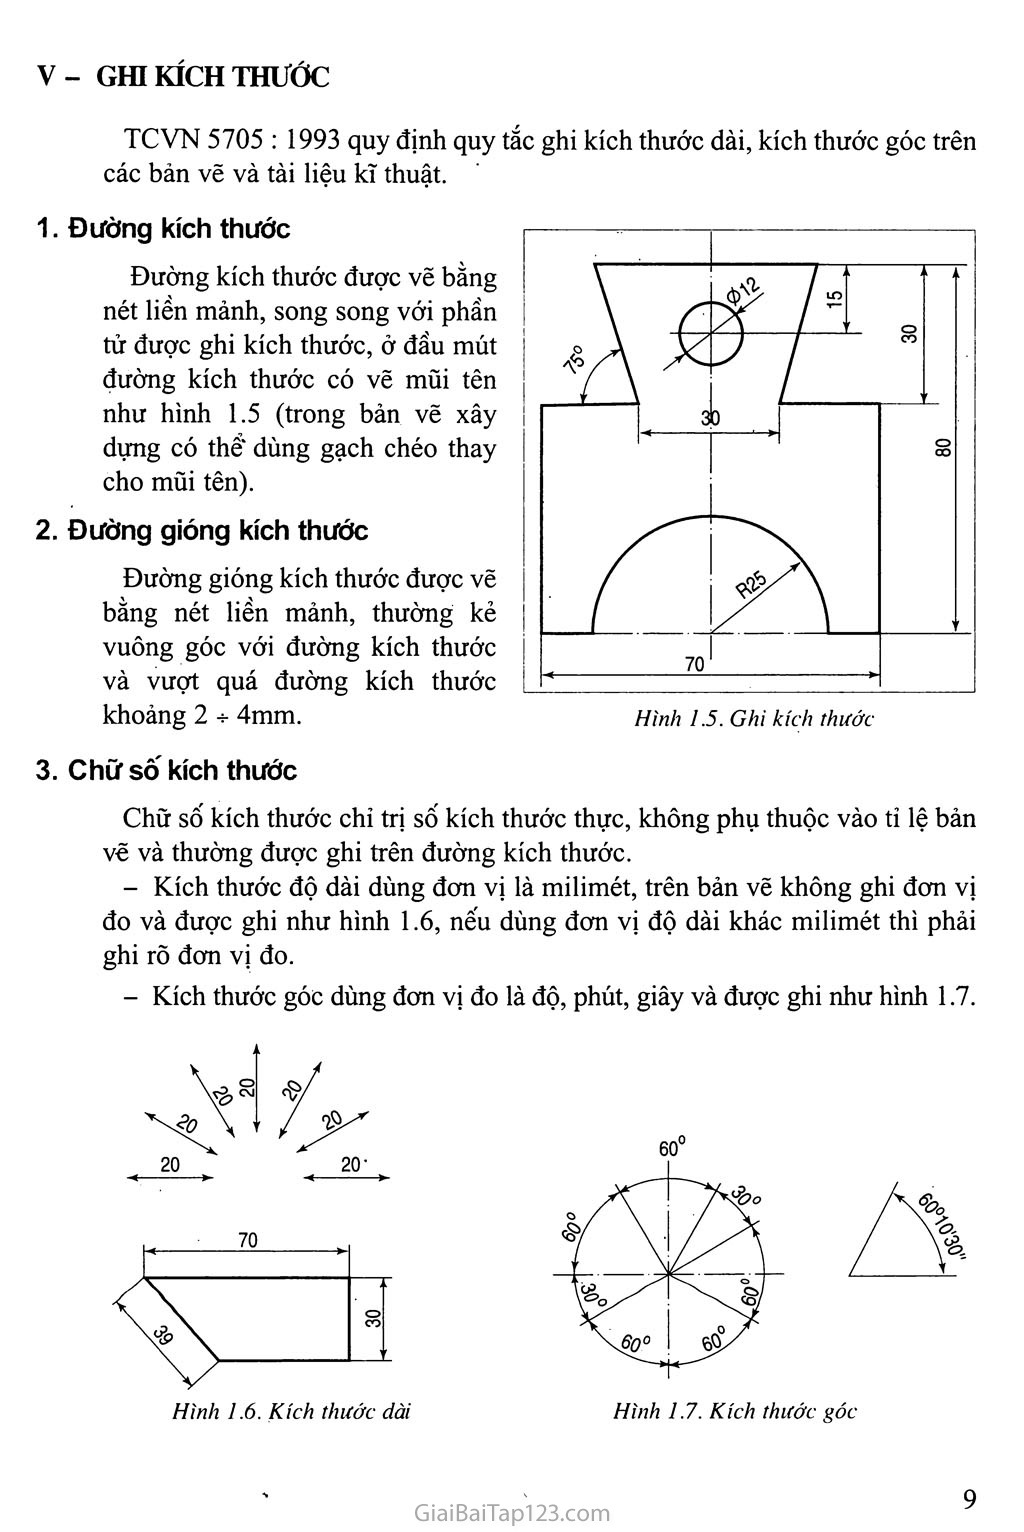 Sách Giáo Khoa Công Nghệ 11  Bài 3 Thực hành Vẽ các hình chiếu của vật  thể đơn giản  Sách Giáo Khoa  Sách Giải Bài Tập  SGK Online PDF